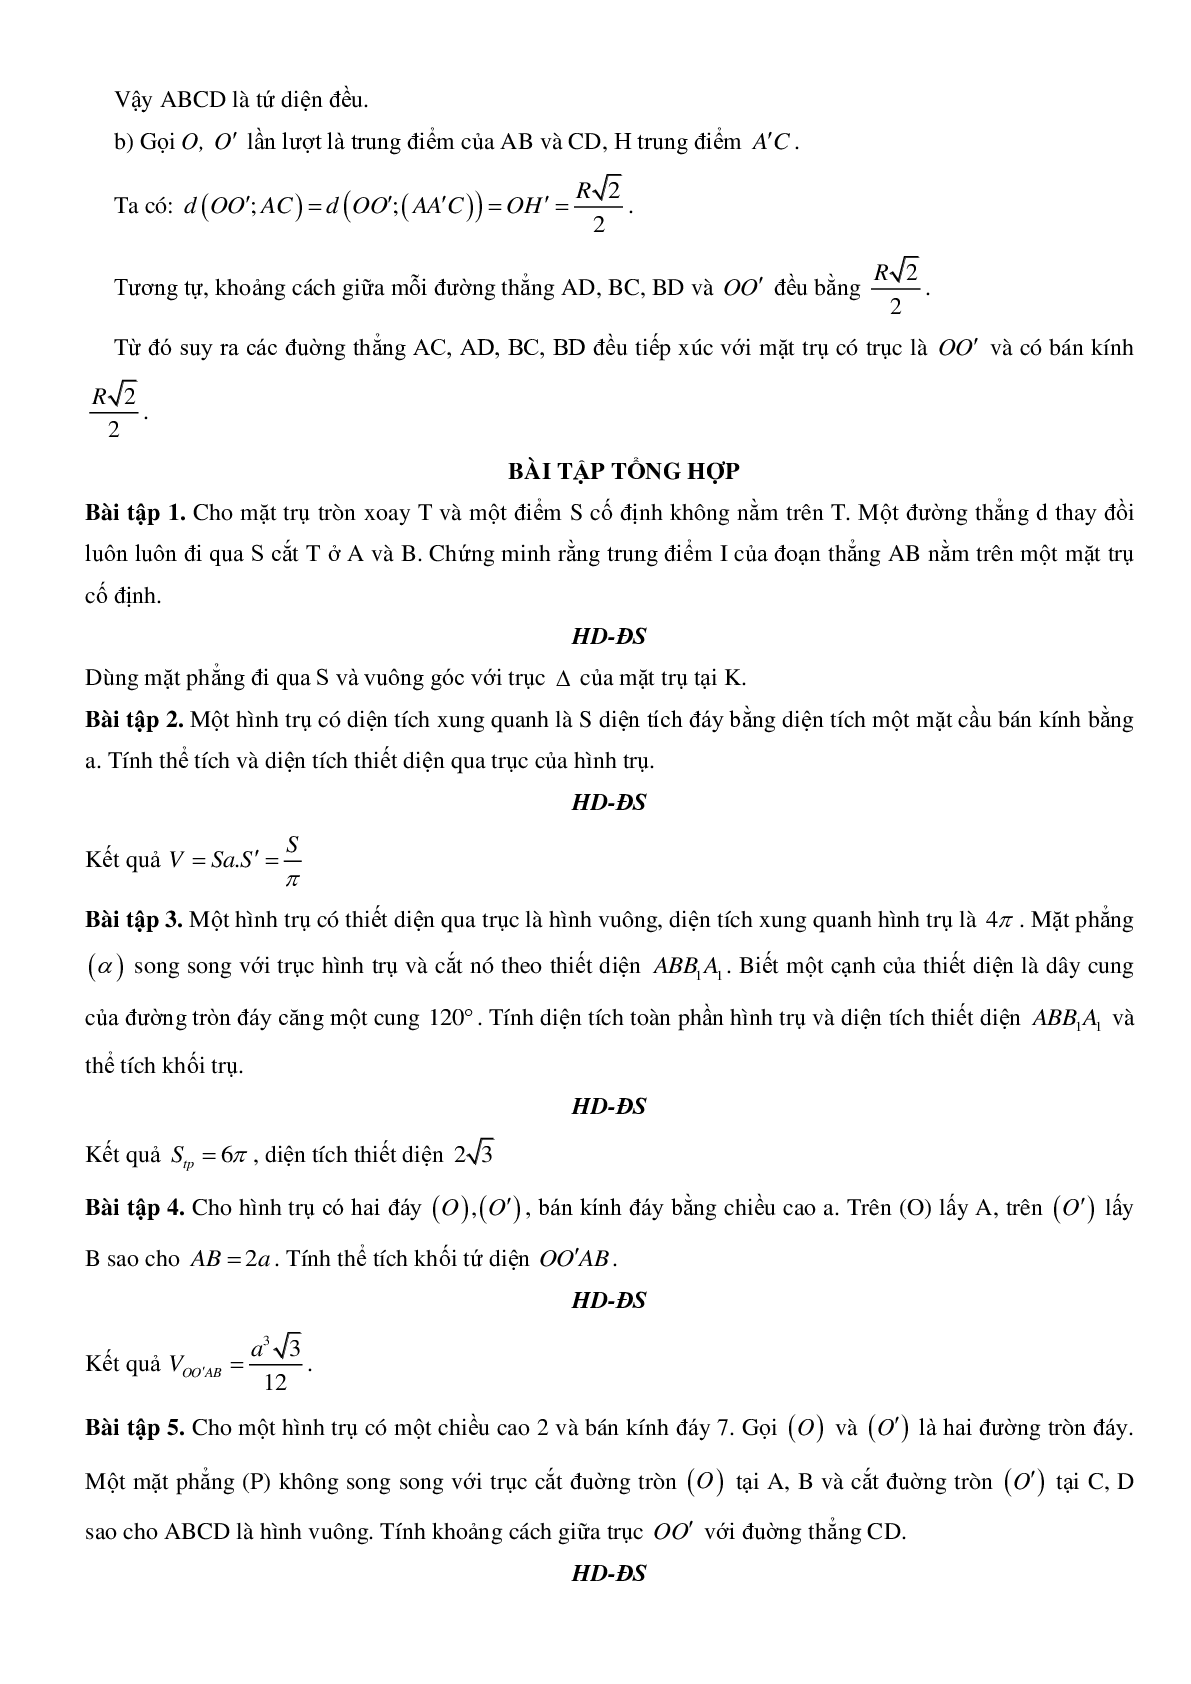 Mặt trụ - Hình trụ - Khối trụ - Ôn thi THPT QG môn toán (trang 8)